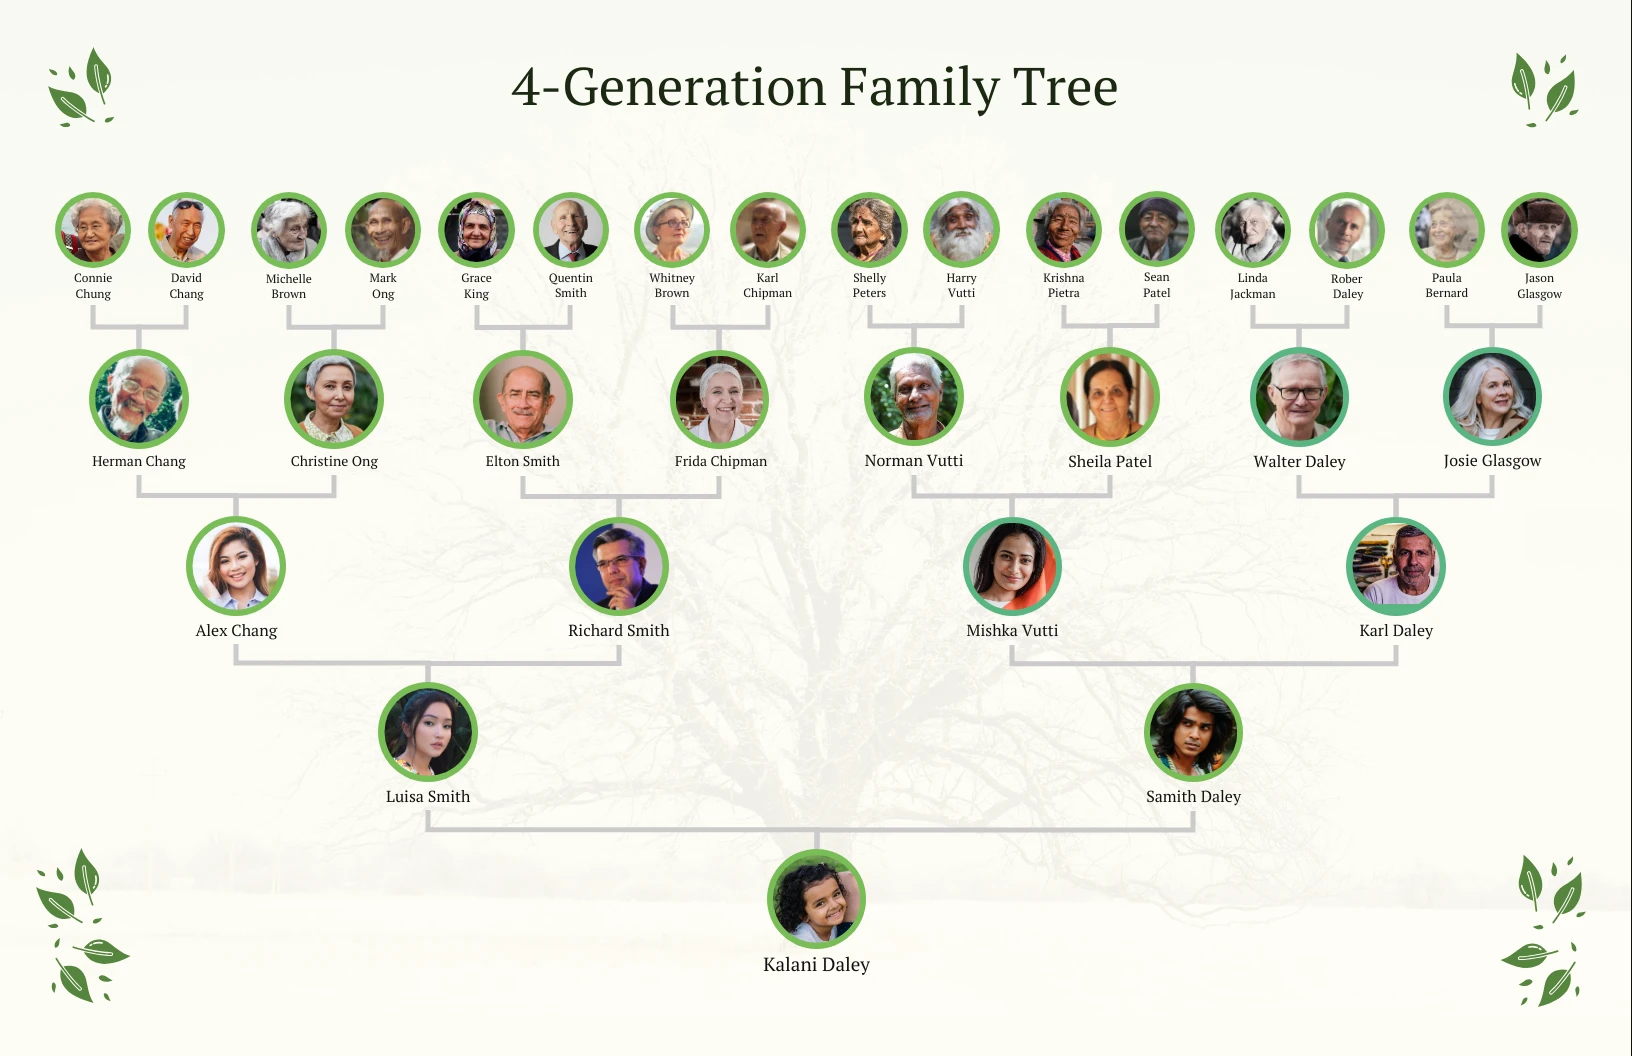 4-Generation Family Tree - Venngage